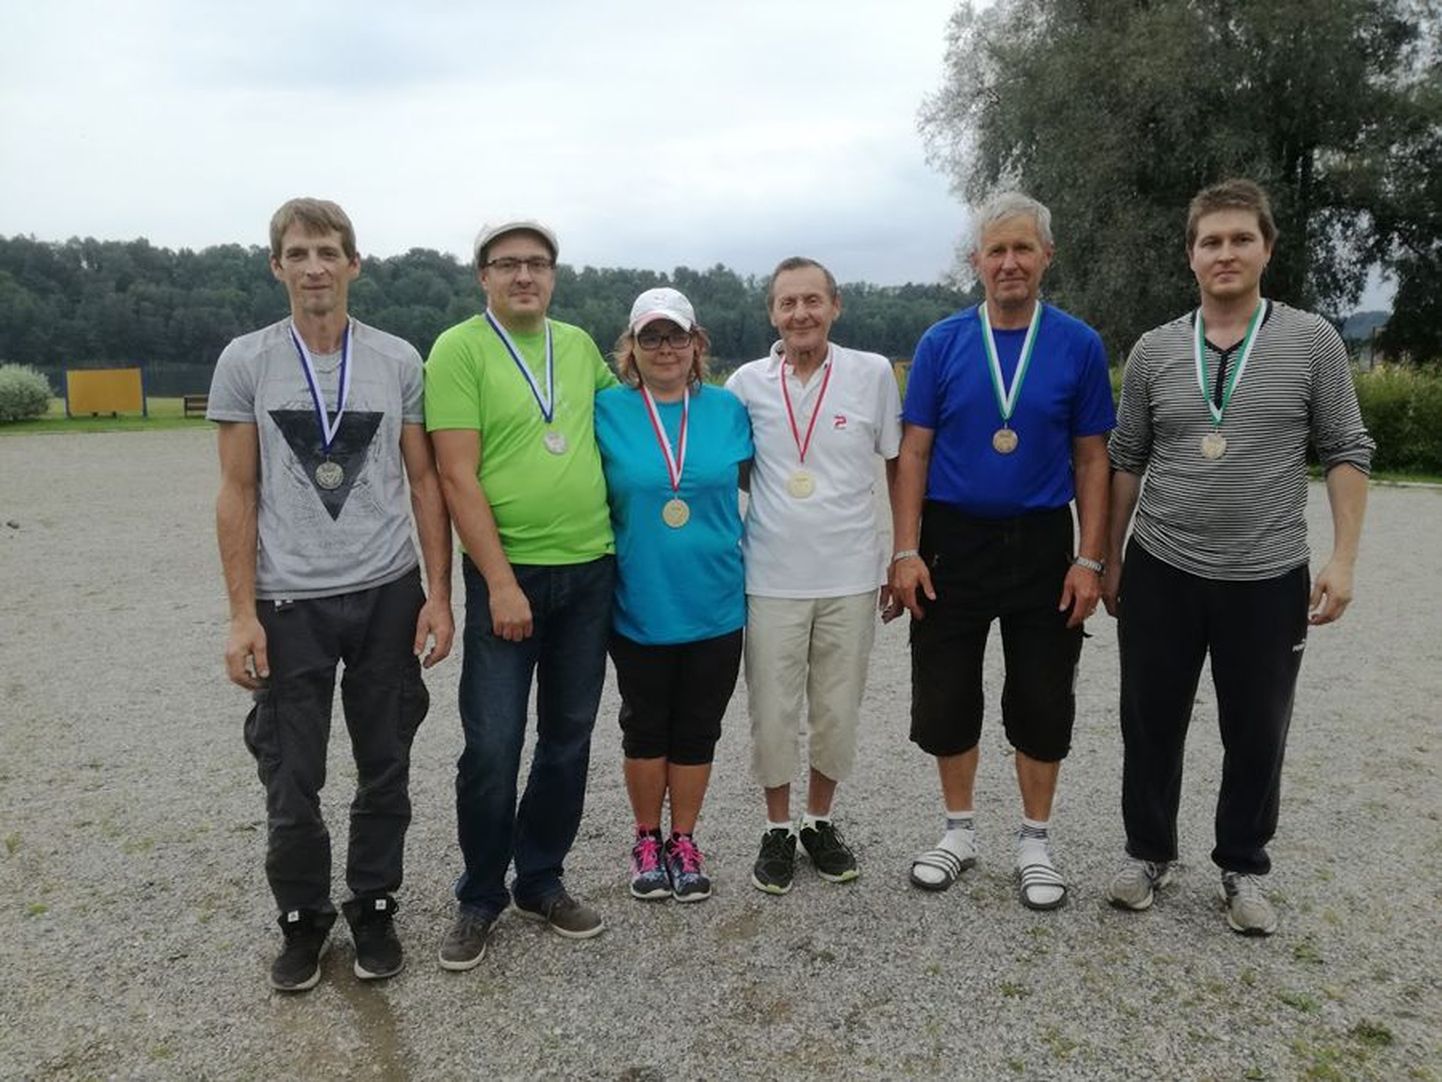 Pildil on petangimeistrivõistluste paarismängu kolme edukama võistkonna liikmed (vasakult) Janek Hillermaa, Toomas Reede, Varje Reede, Toivo Ilves, Mauno Mill ja Marko Kiivikas.